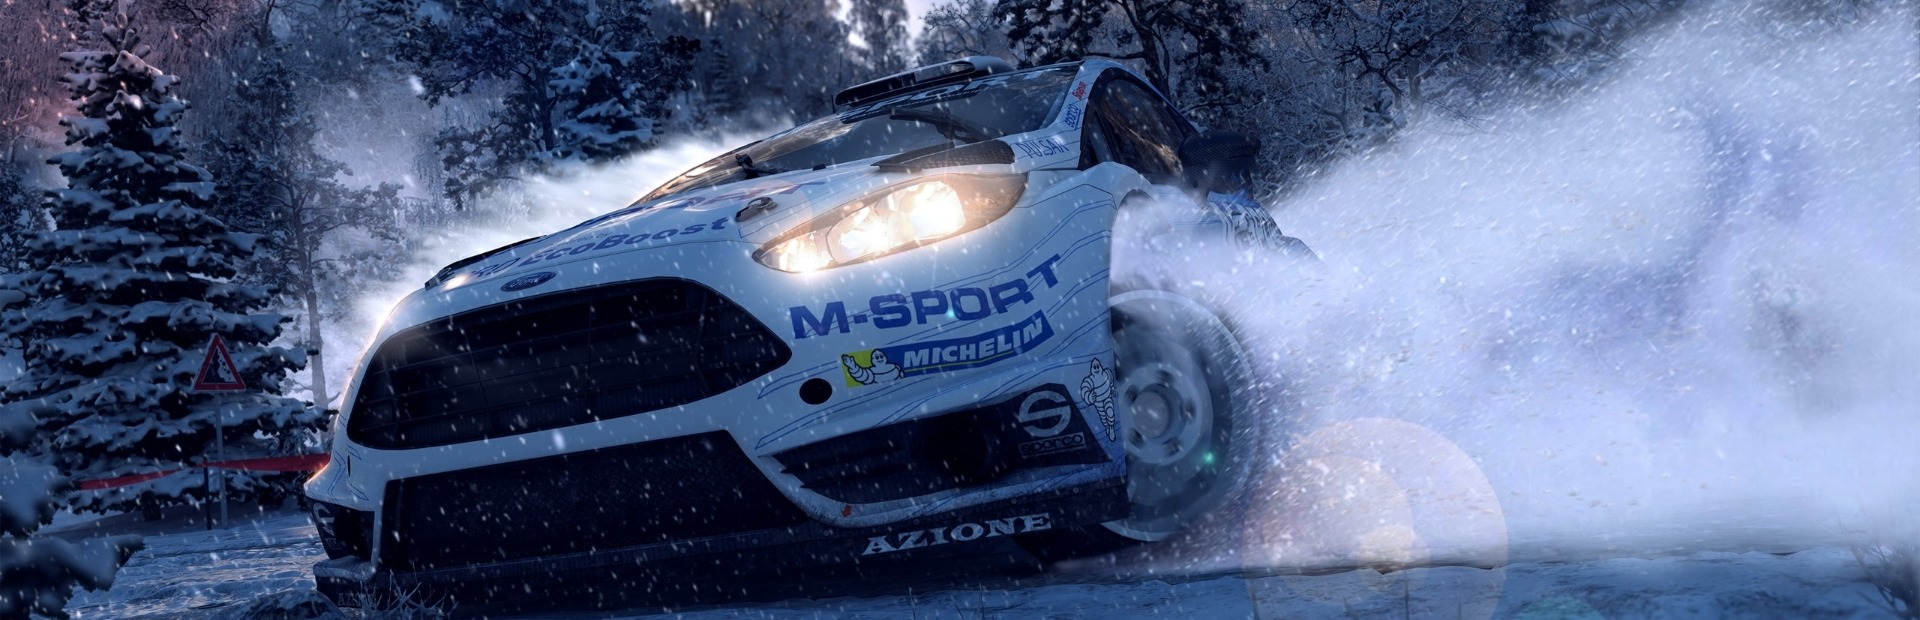 WRC 5: FIA World Rally Championship (Xbox ONE / Xbox Series X|S)